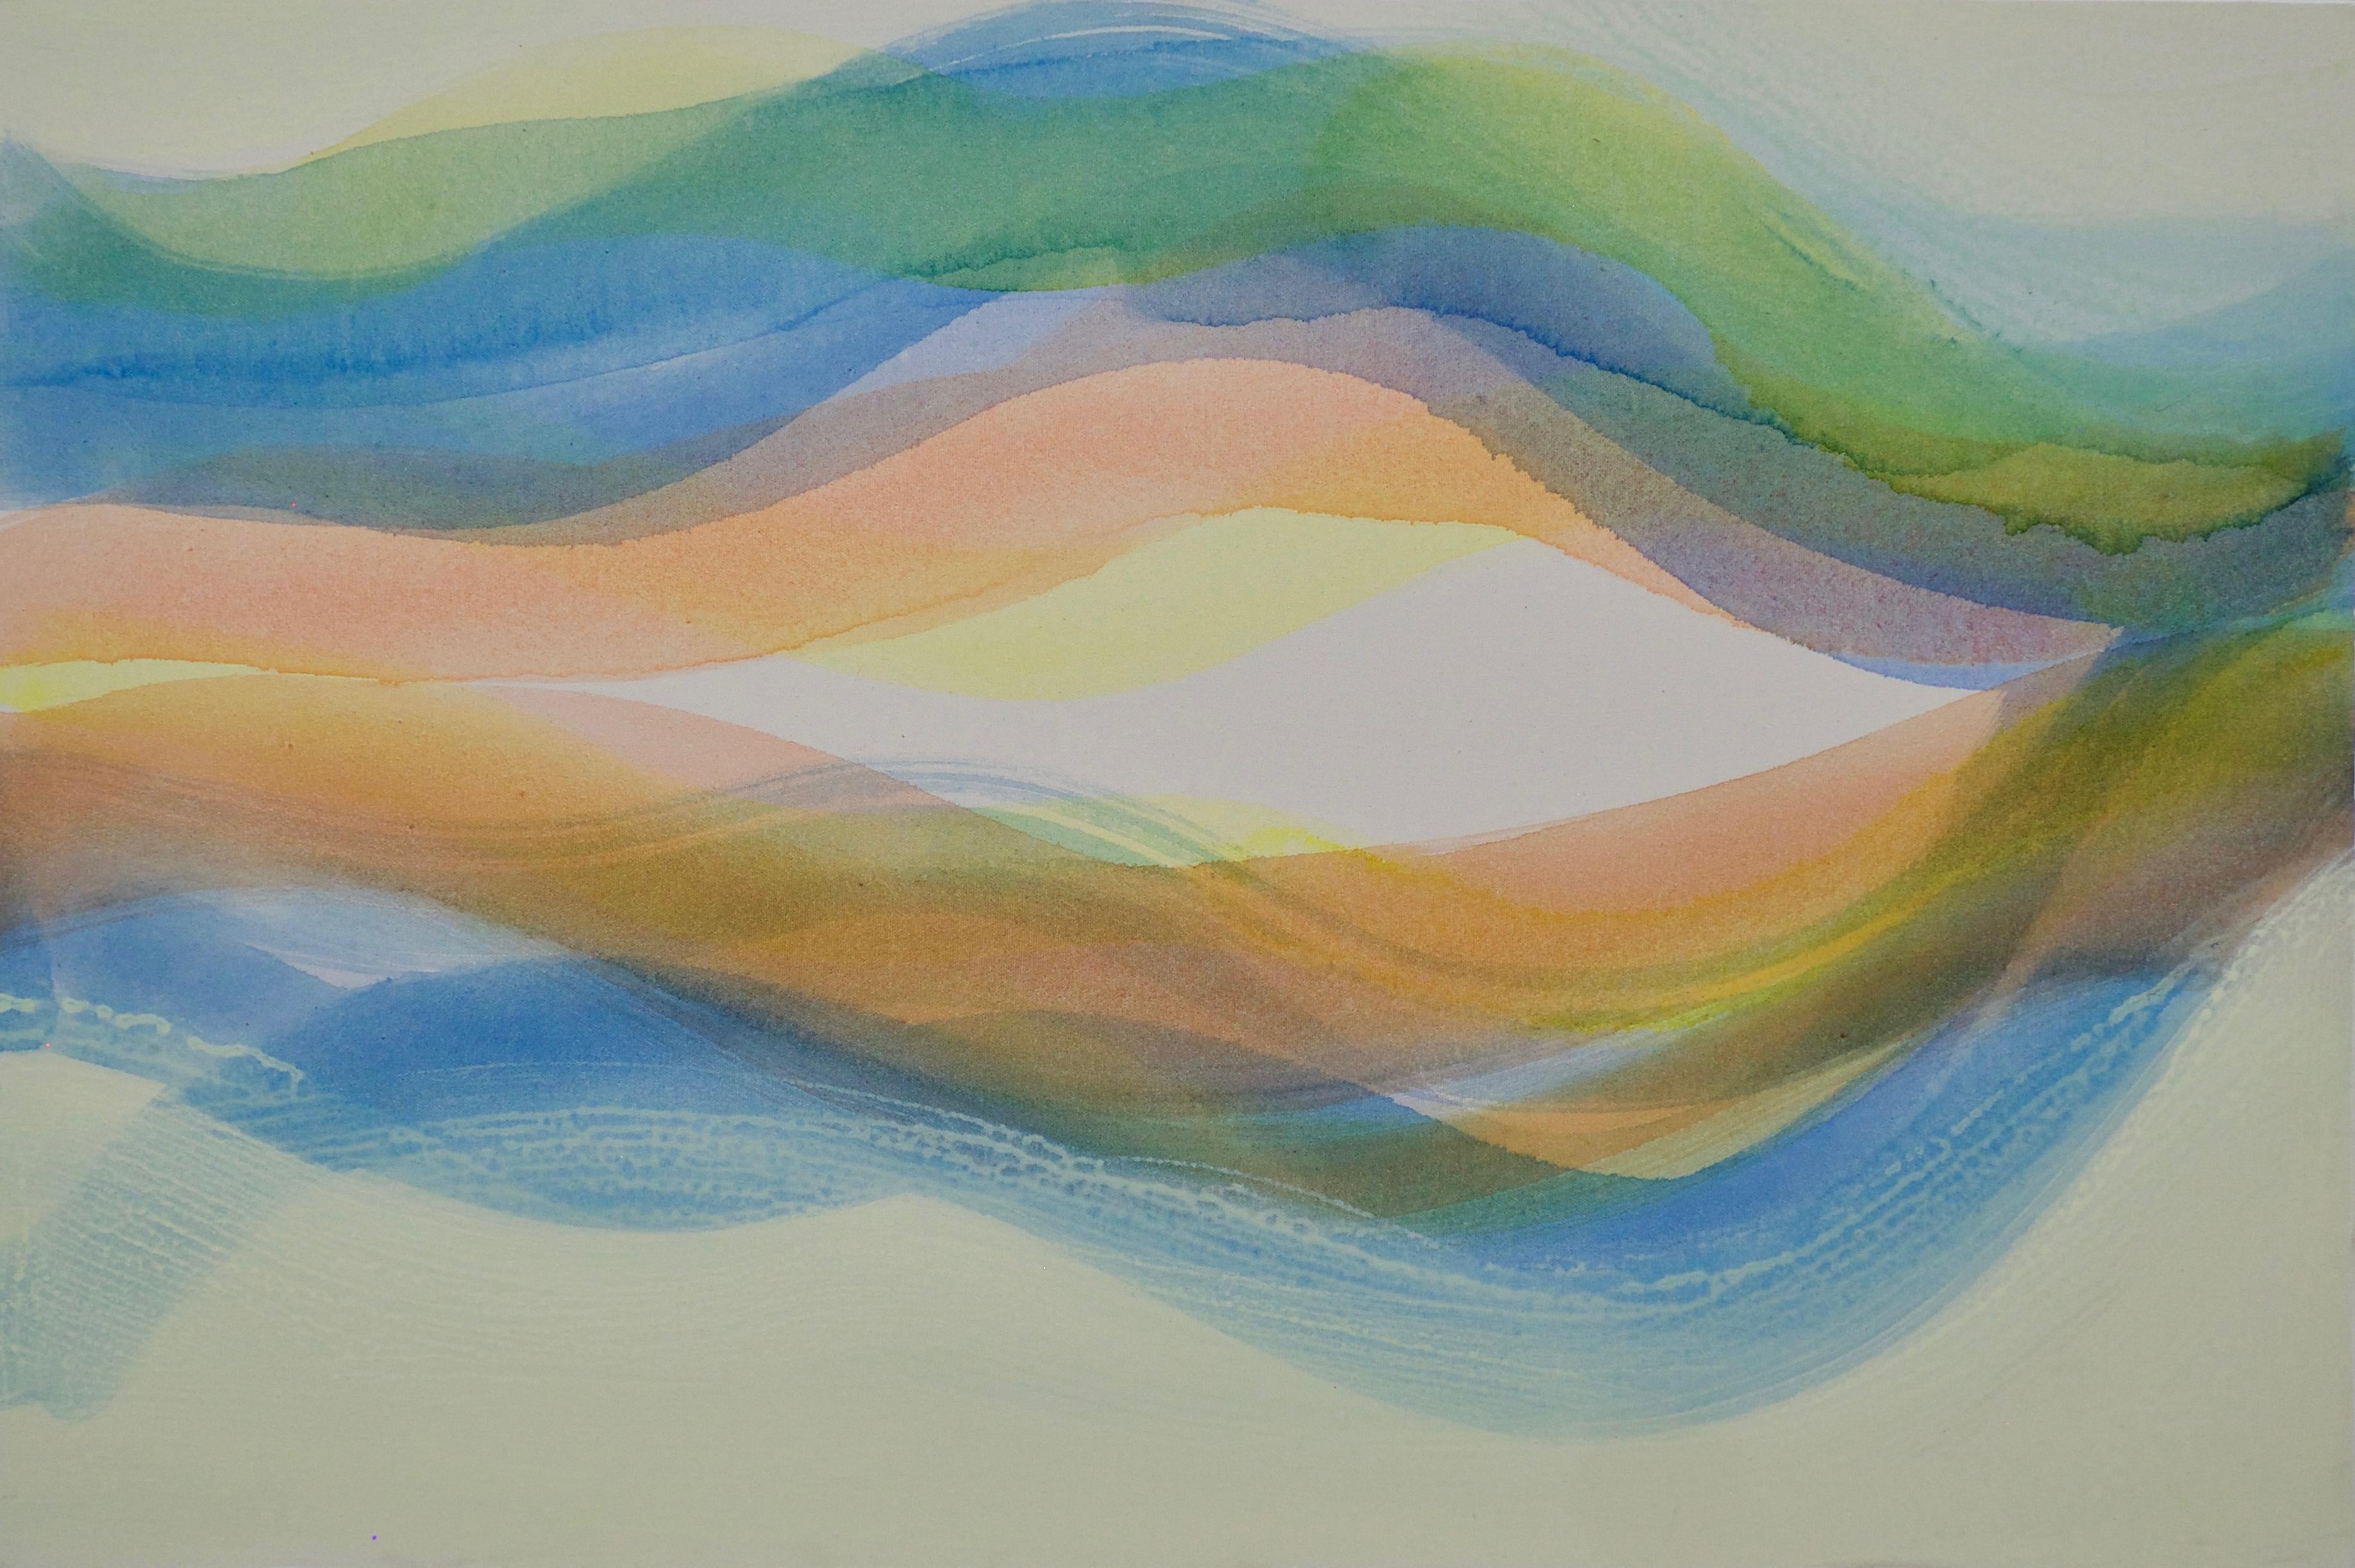 Abstract Painting Margaret Neill - Locale, bleu, orange pêche clair, vert, ondulations jaunes douces, vagues de couleur